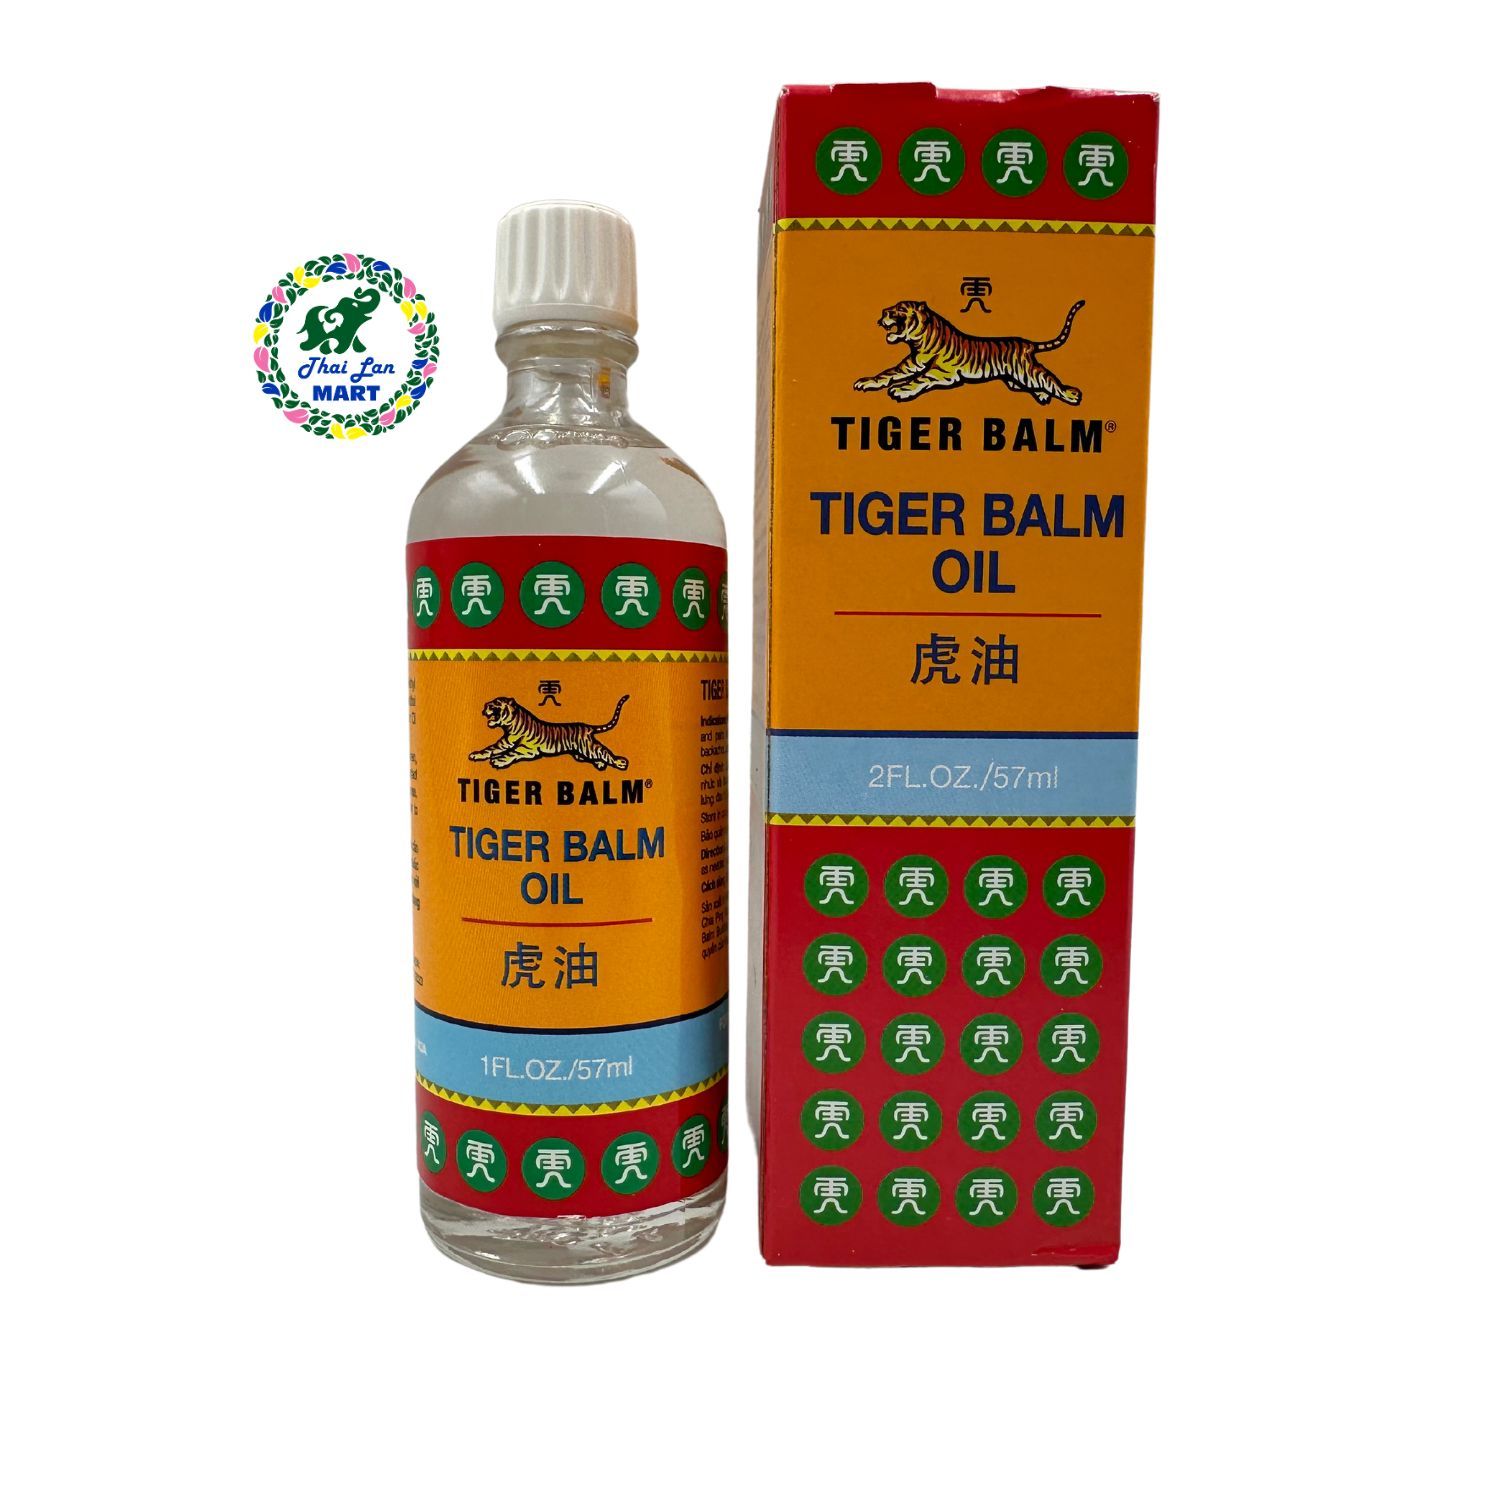  Dầu massage xoa bóp nhức mỏi tiger balm oil hàng nhập khẩu singapore 